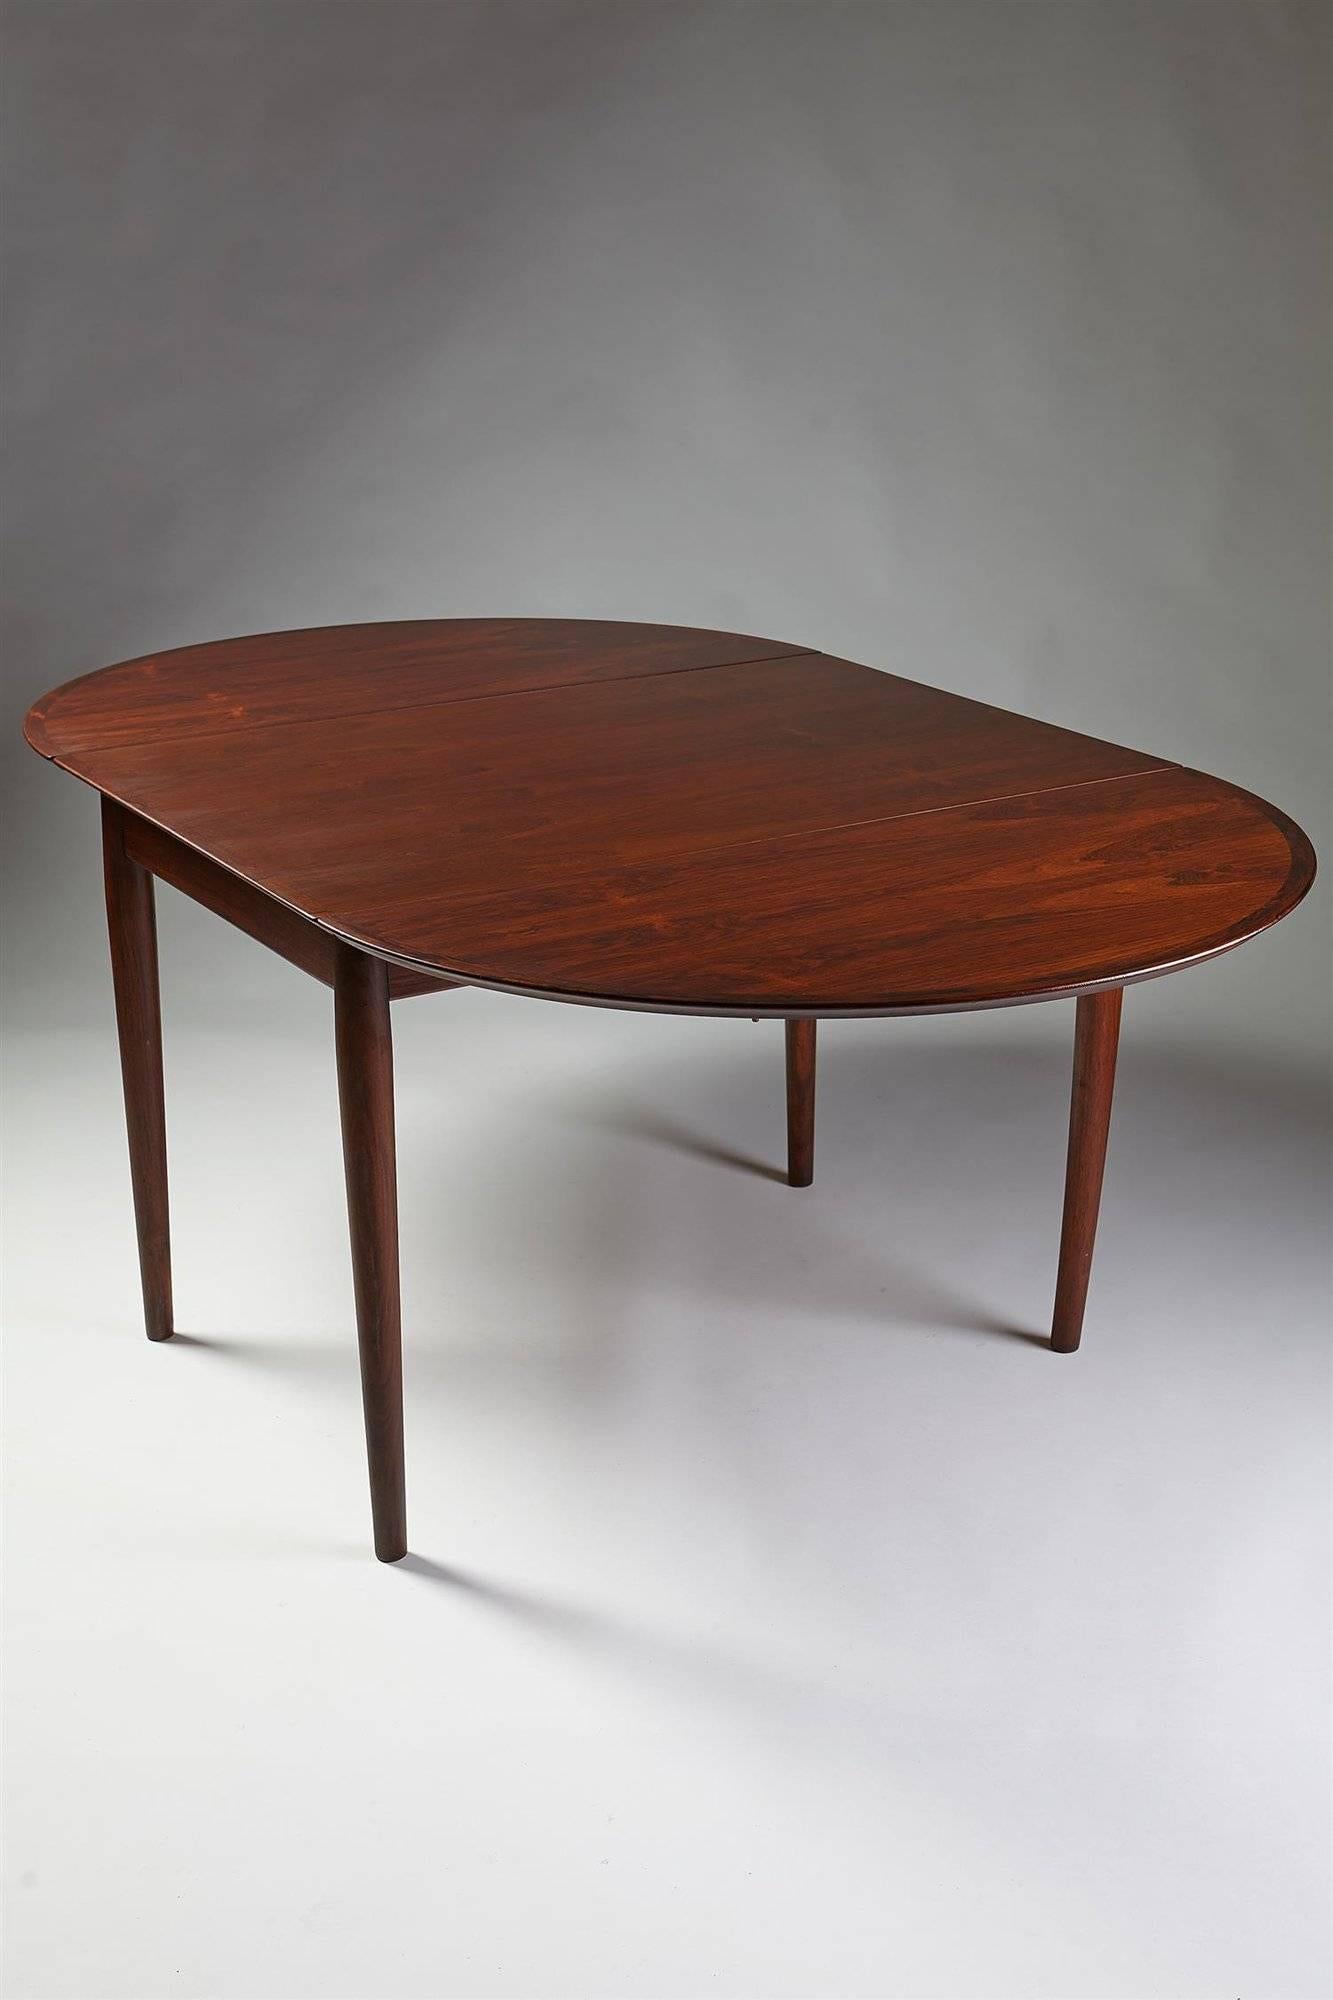 Scandinavian Modern Dining Table Designed by Arne Vodder for Sibast, Denmark, 1958